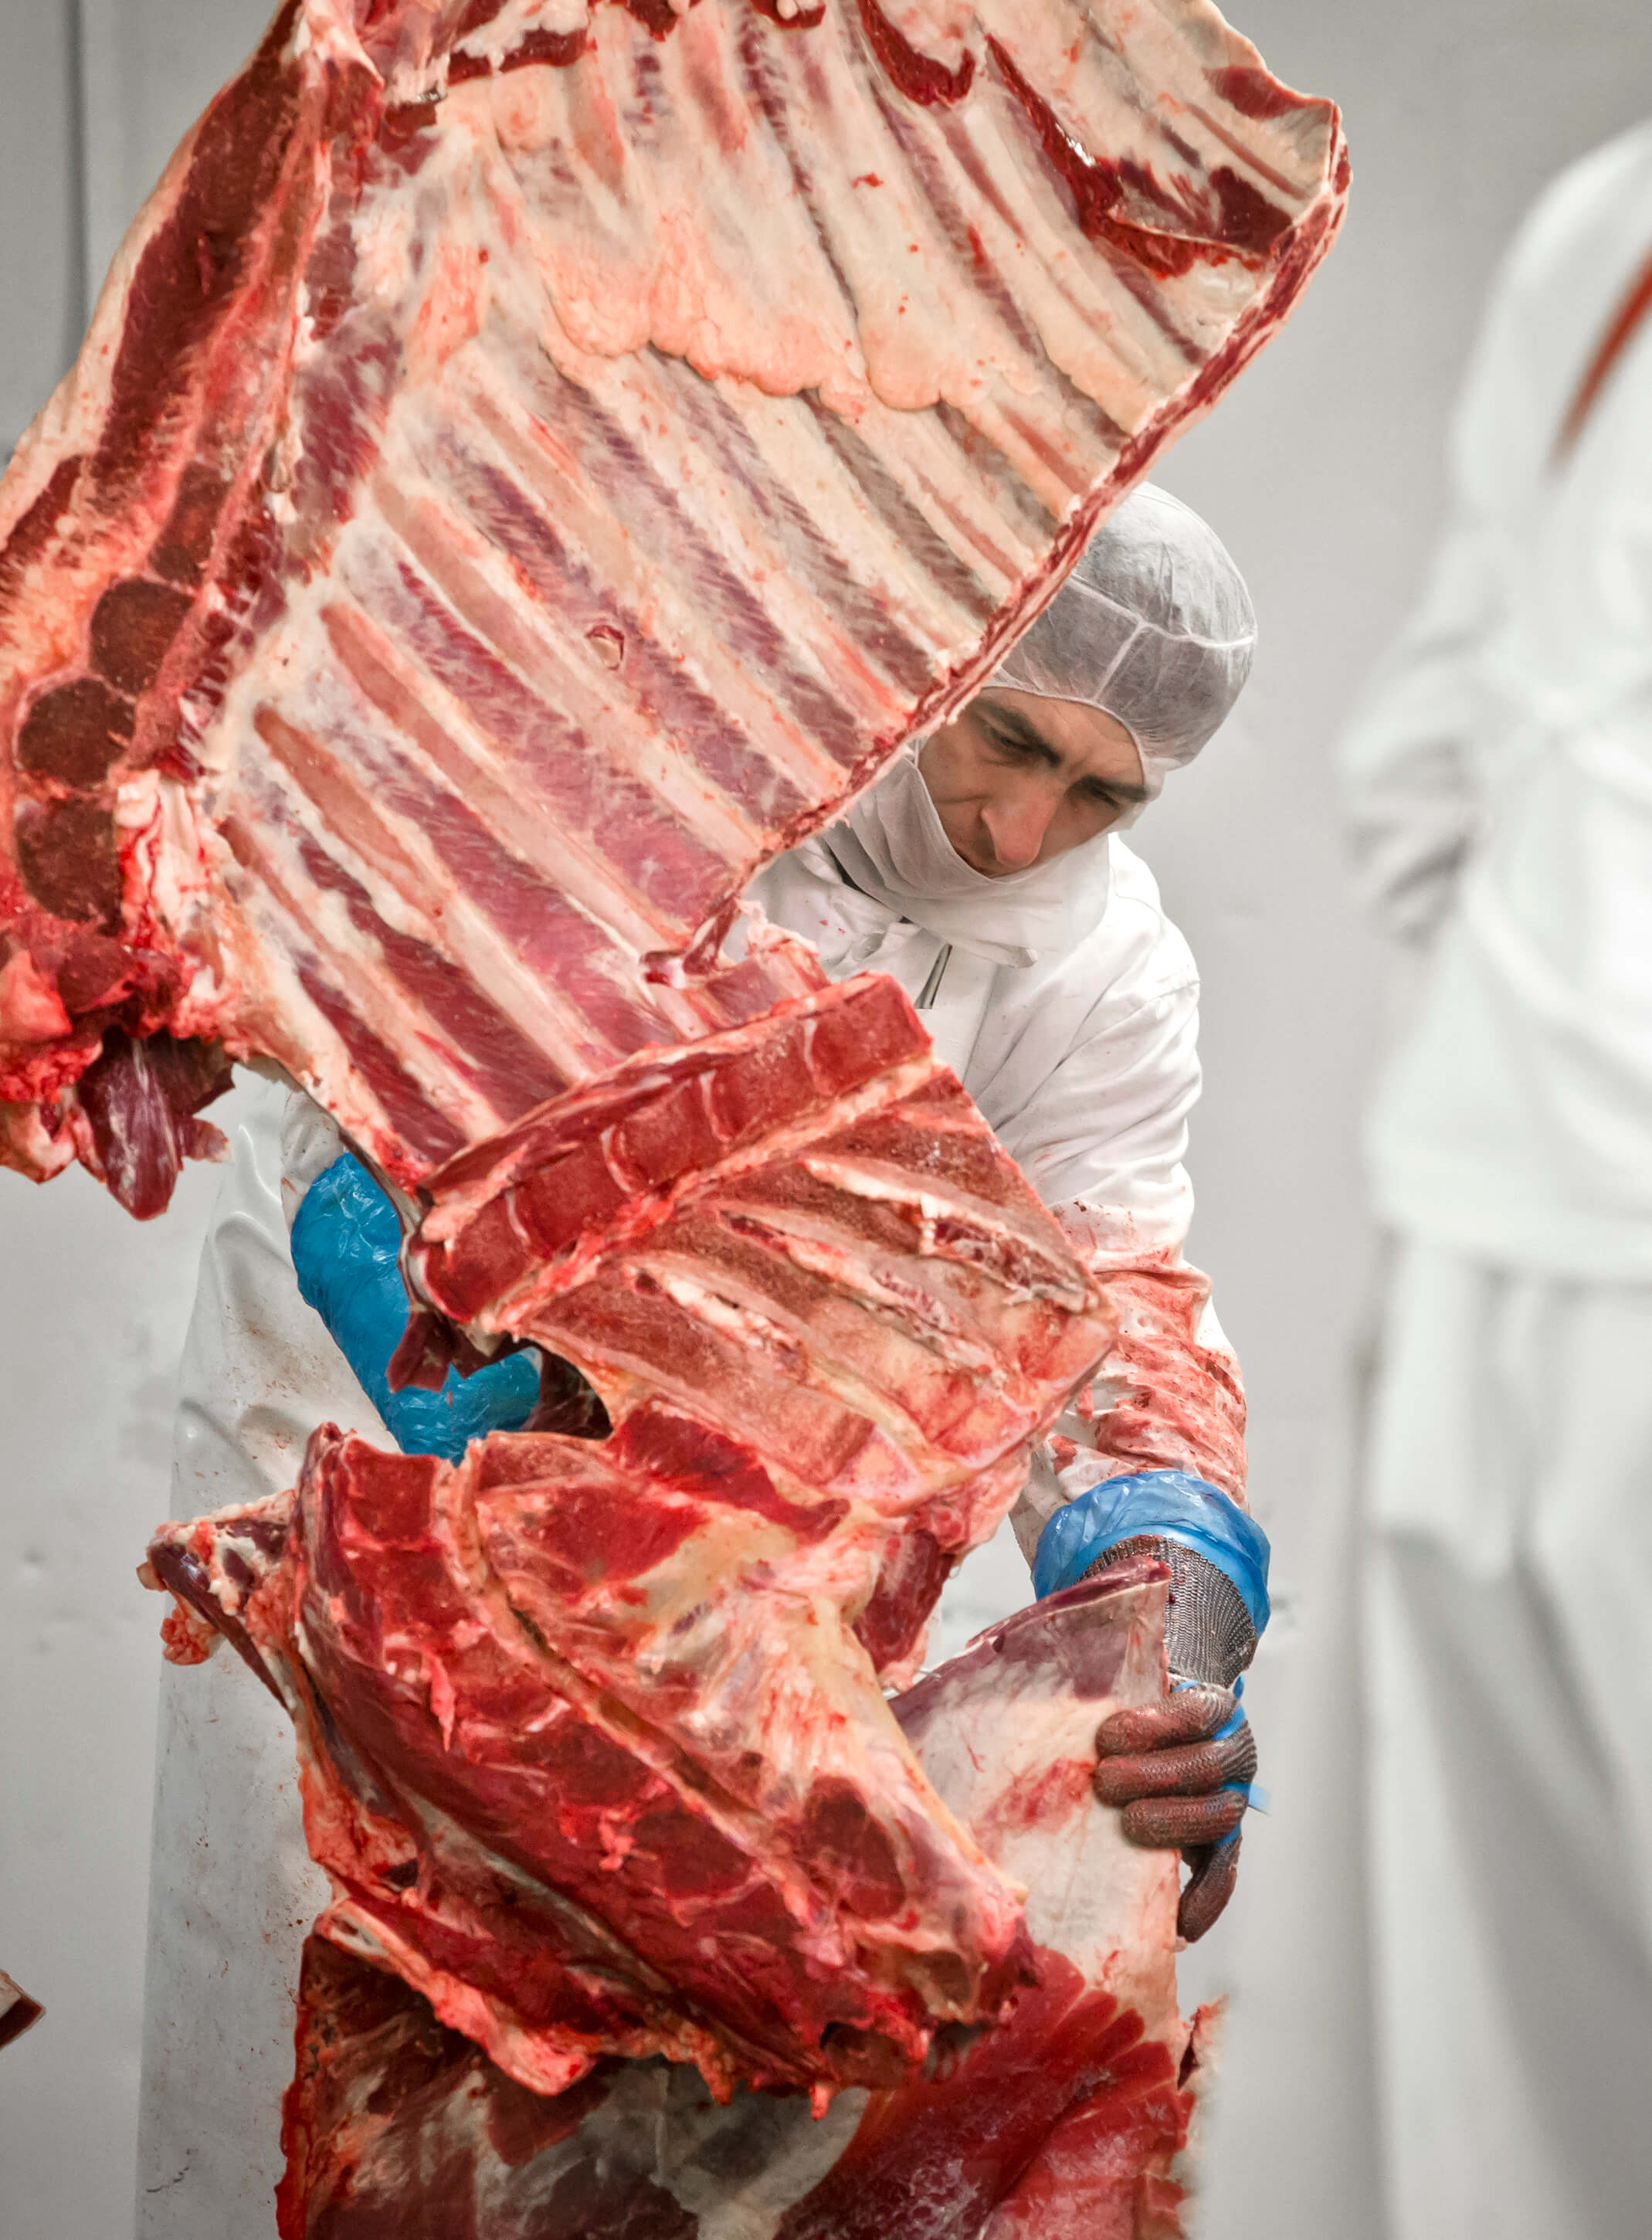 Ett företag hade markerat köttet som nötkött.